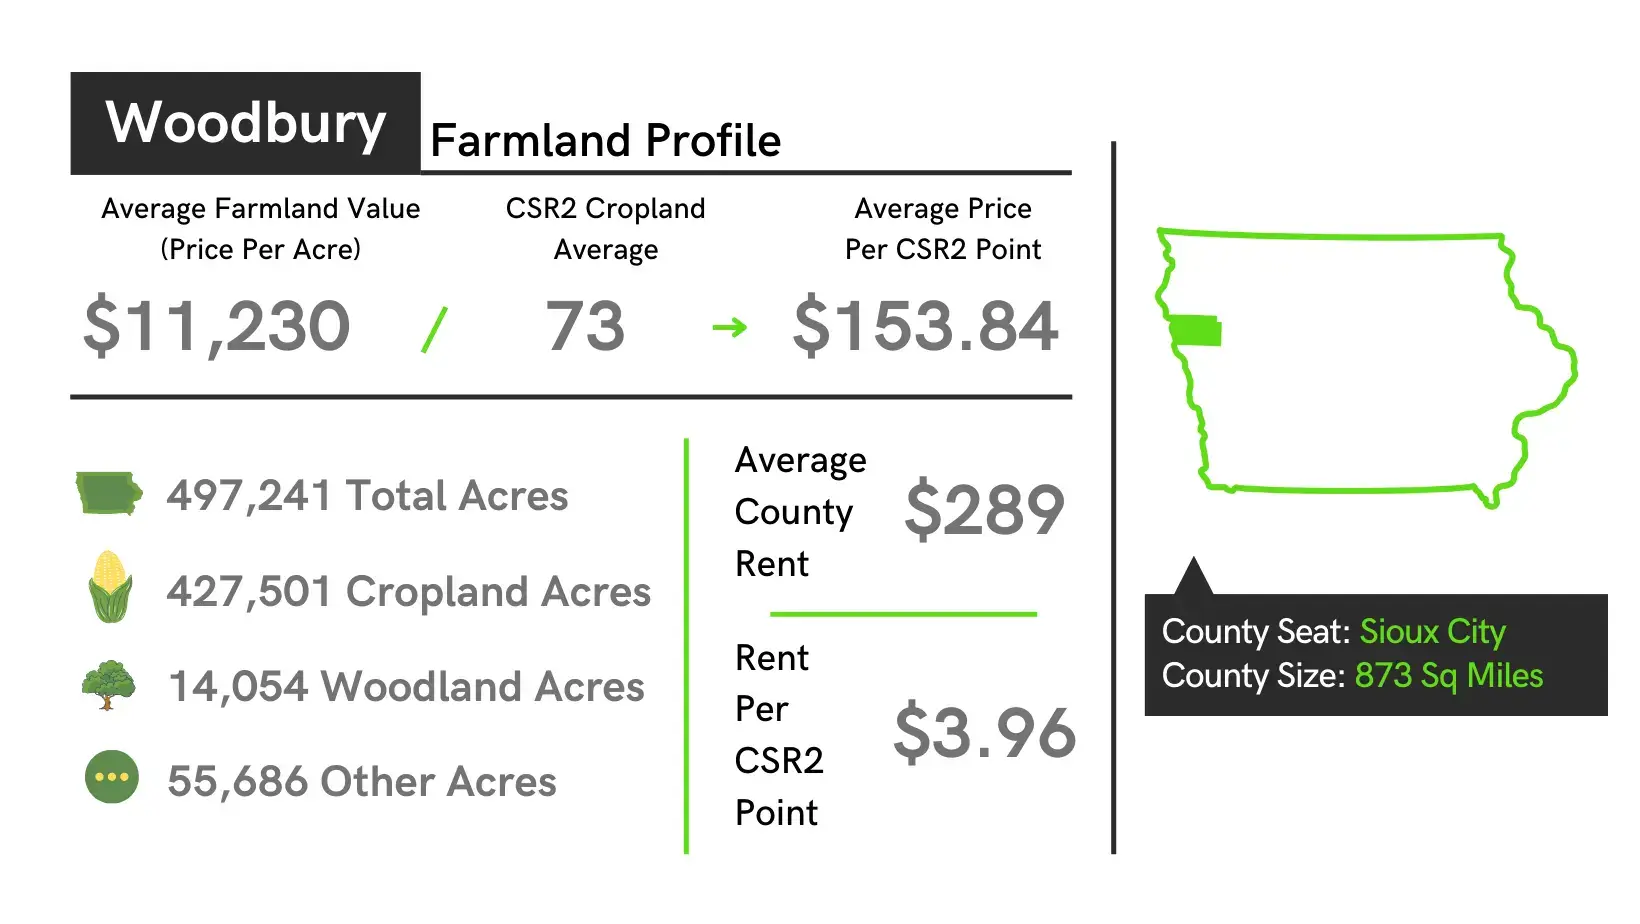 Woodbury County Farmland Profile